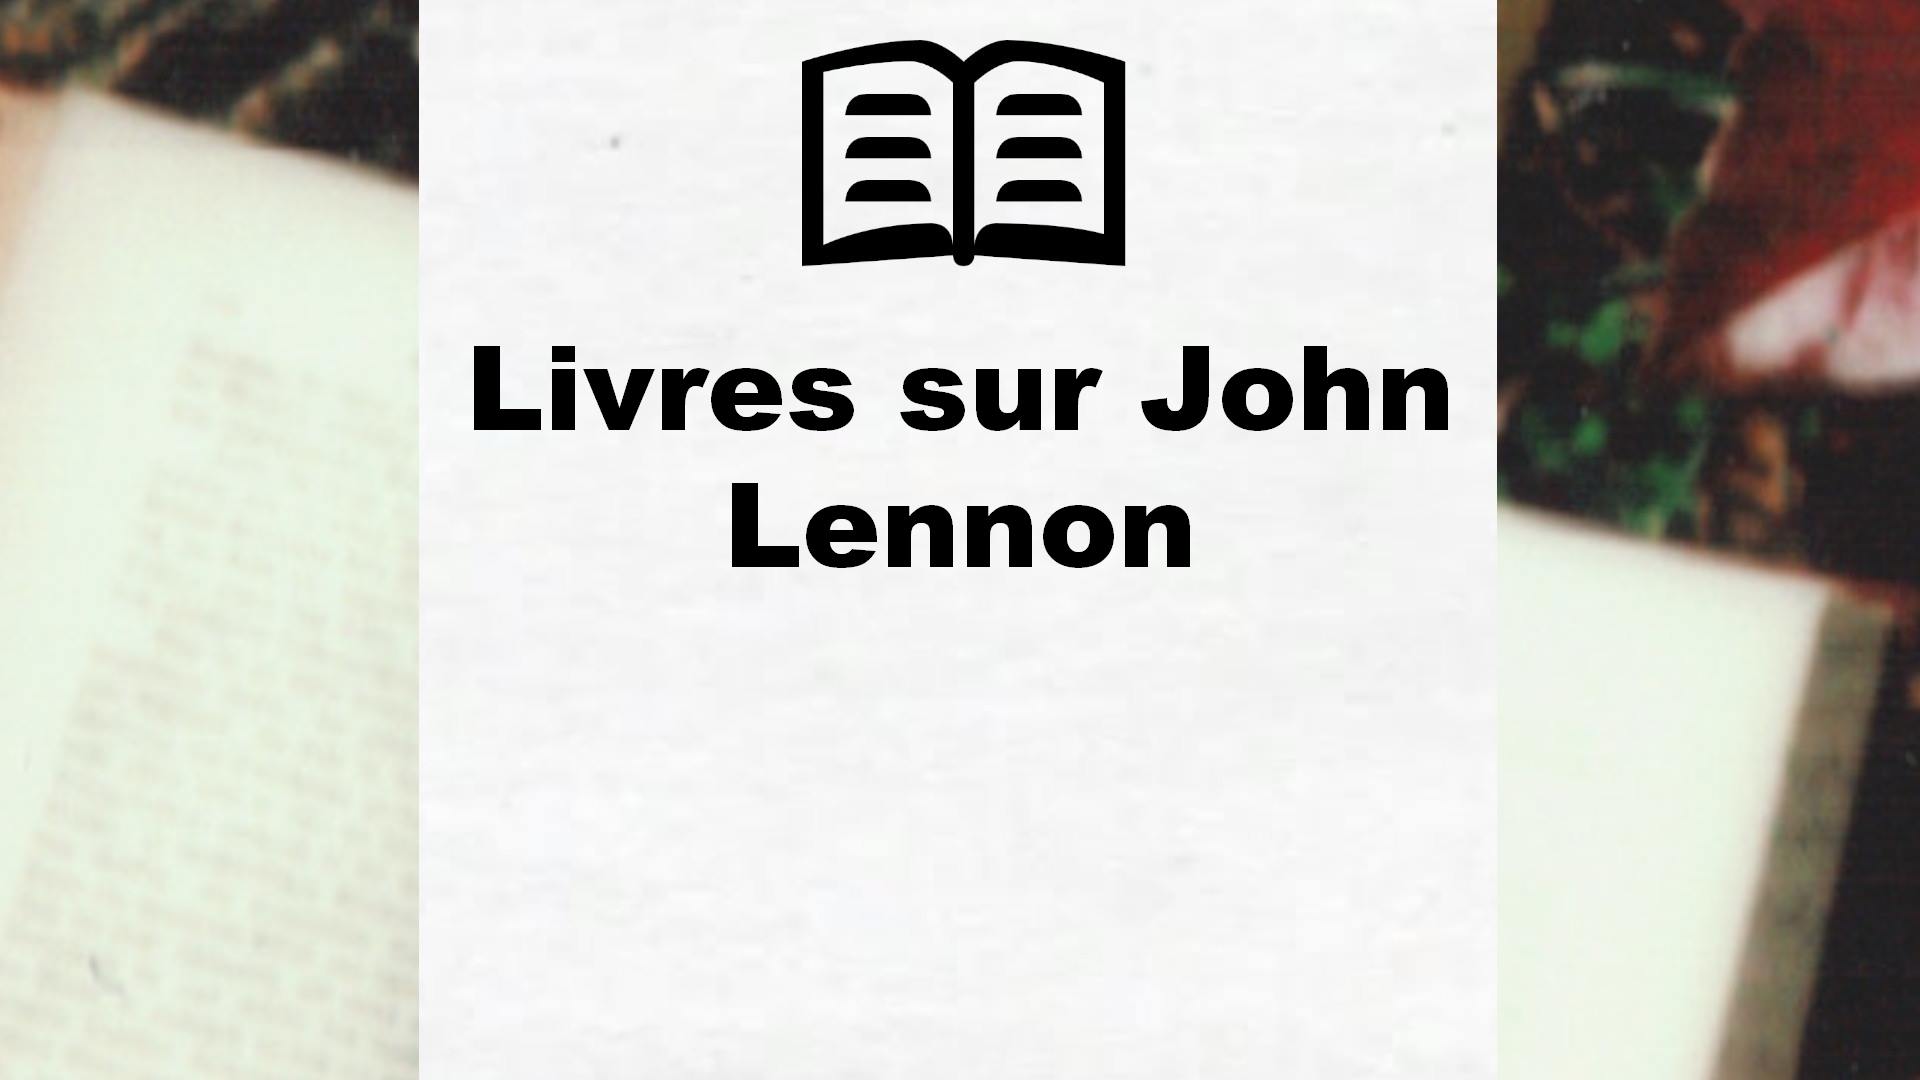 Livres sur John Lennon